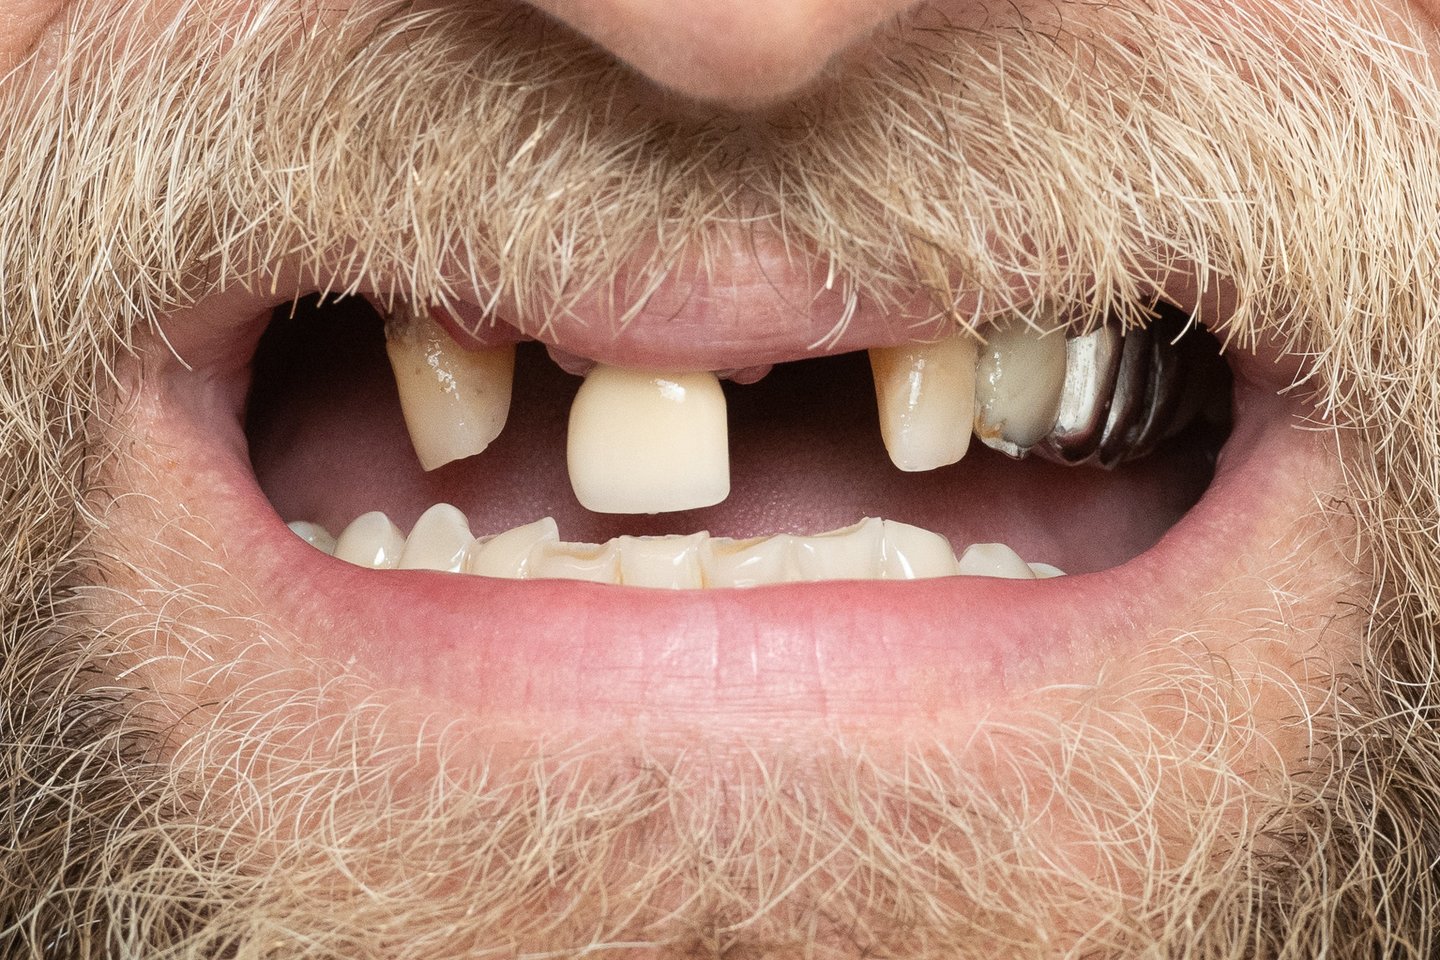 E.Česoniui buvo sudarytas kombinuotas gydymo planas. Pirmiausia pašalinti 8 dantys. Viršutiniam žandikauliui atlikta „Visi ant keturių“ implantacija, kai viso žandikaulio dantys atkuriami vos ant keturių implantų.